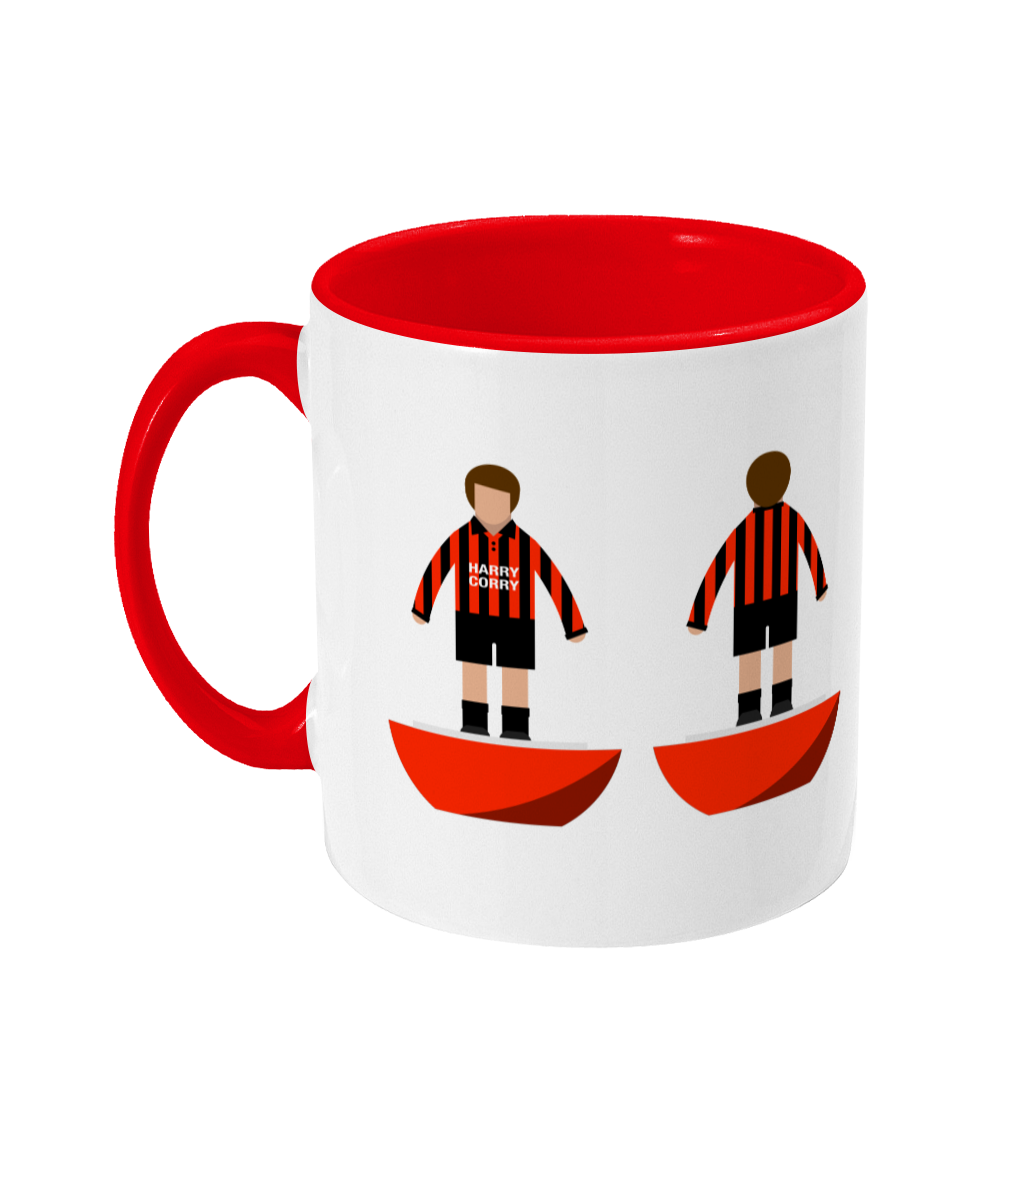 Football Player 'Crusaders' Mug